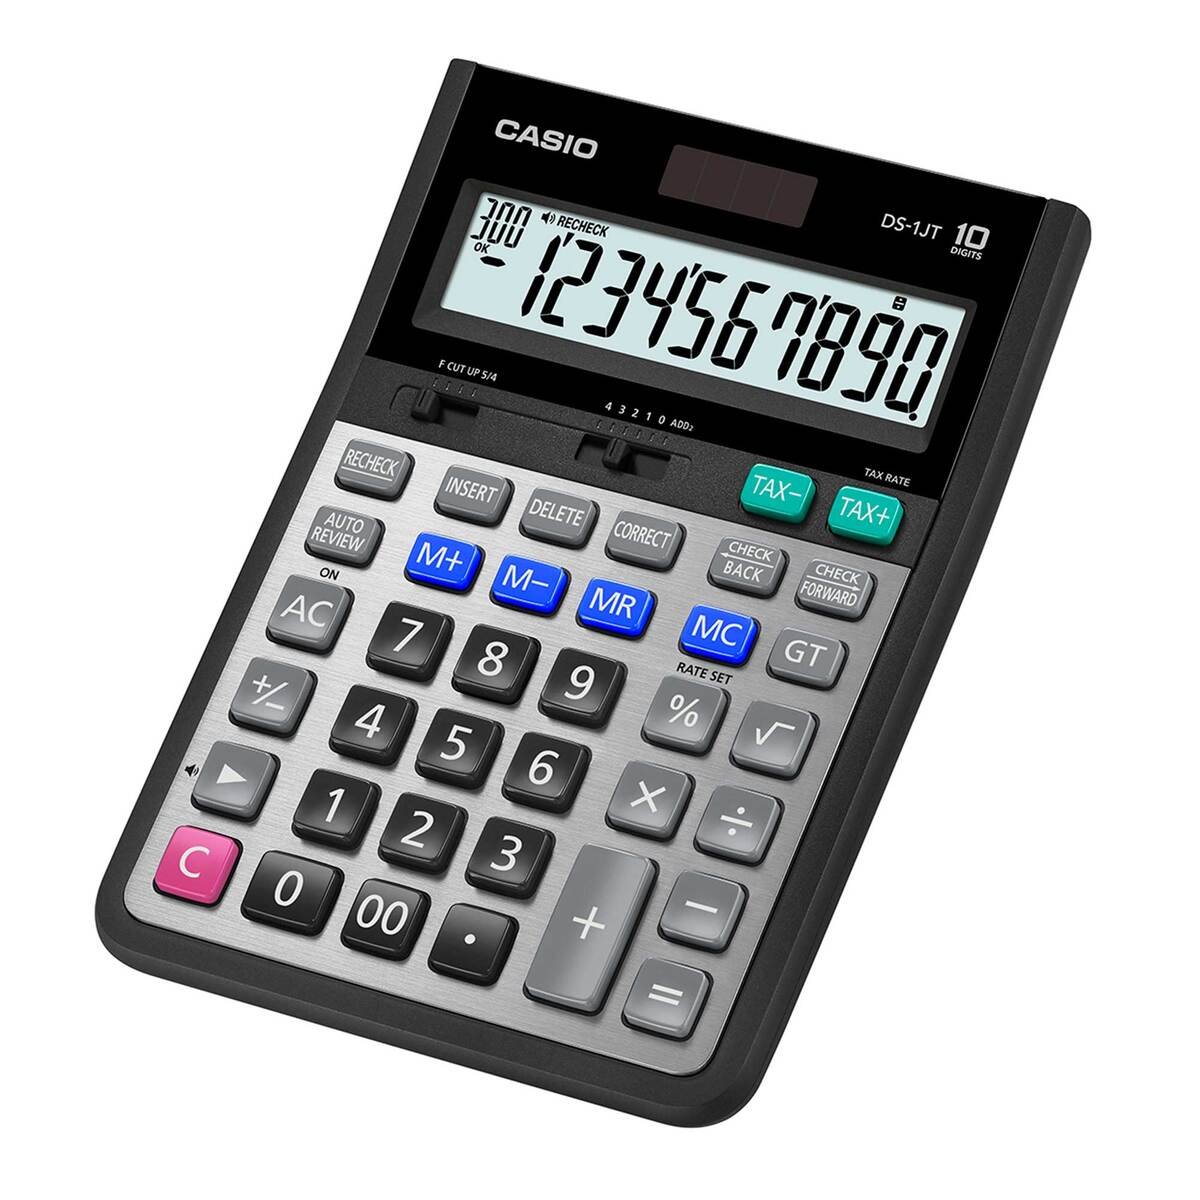 Casio Calculator DS-1JT